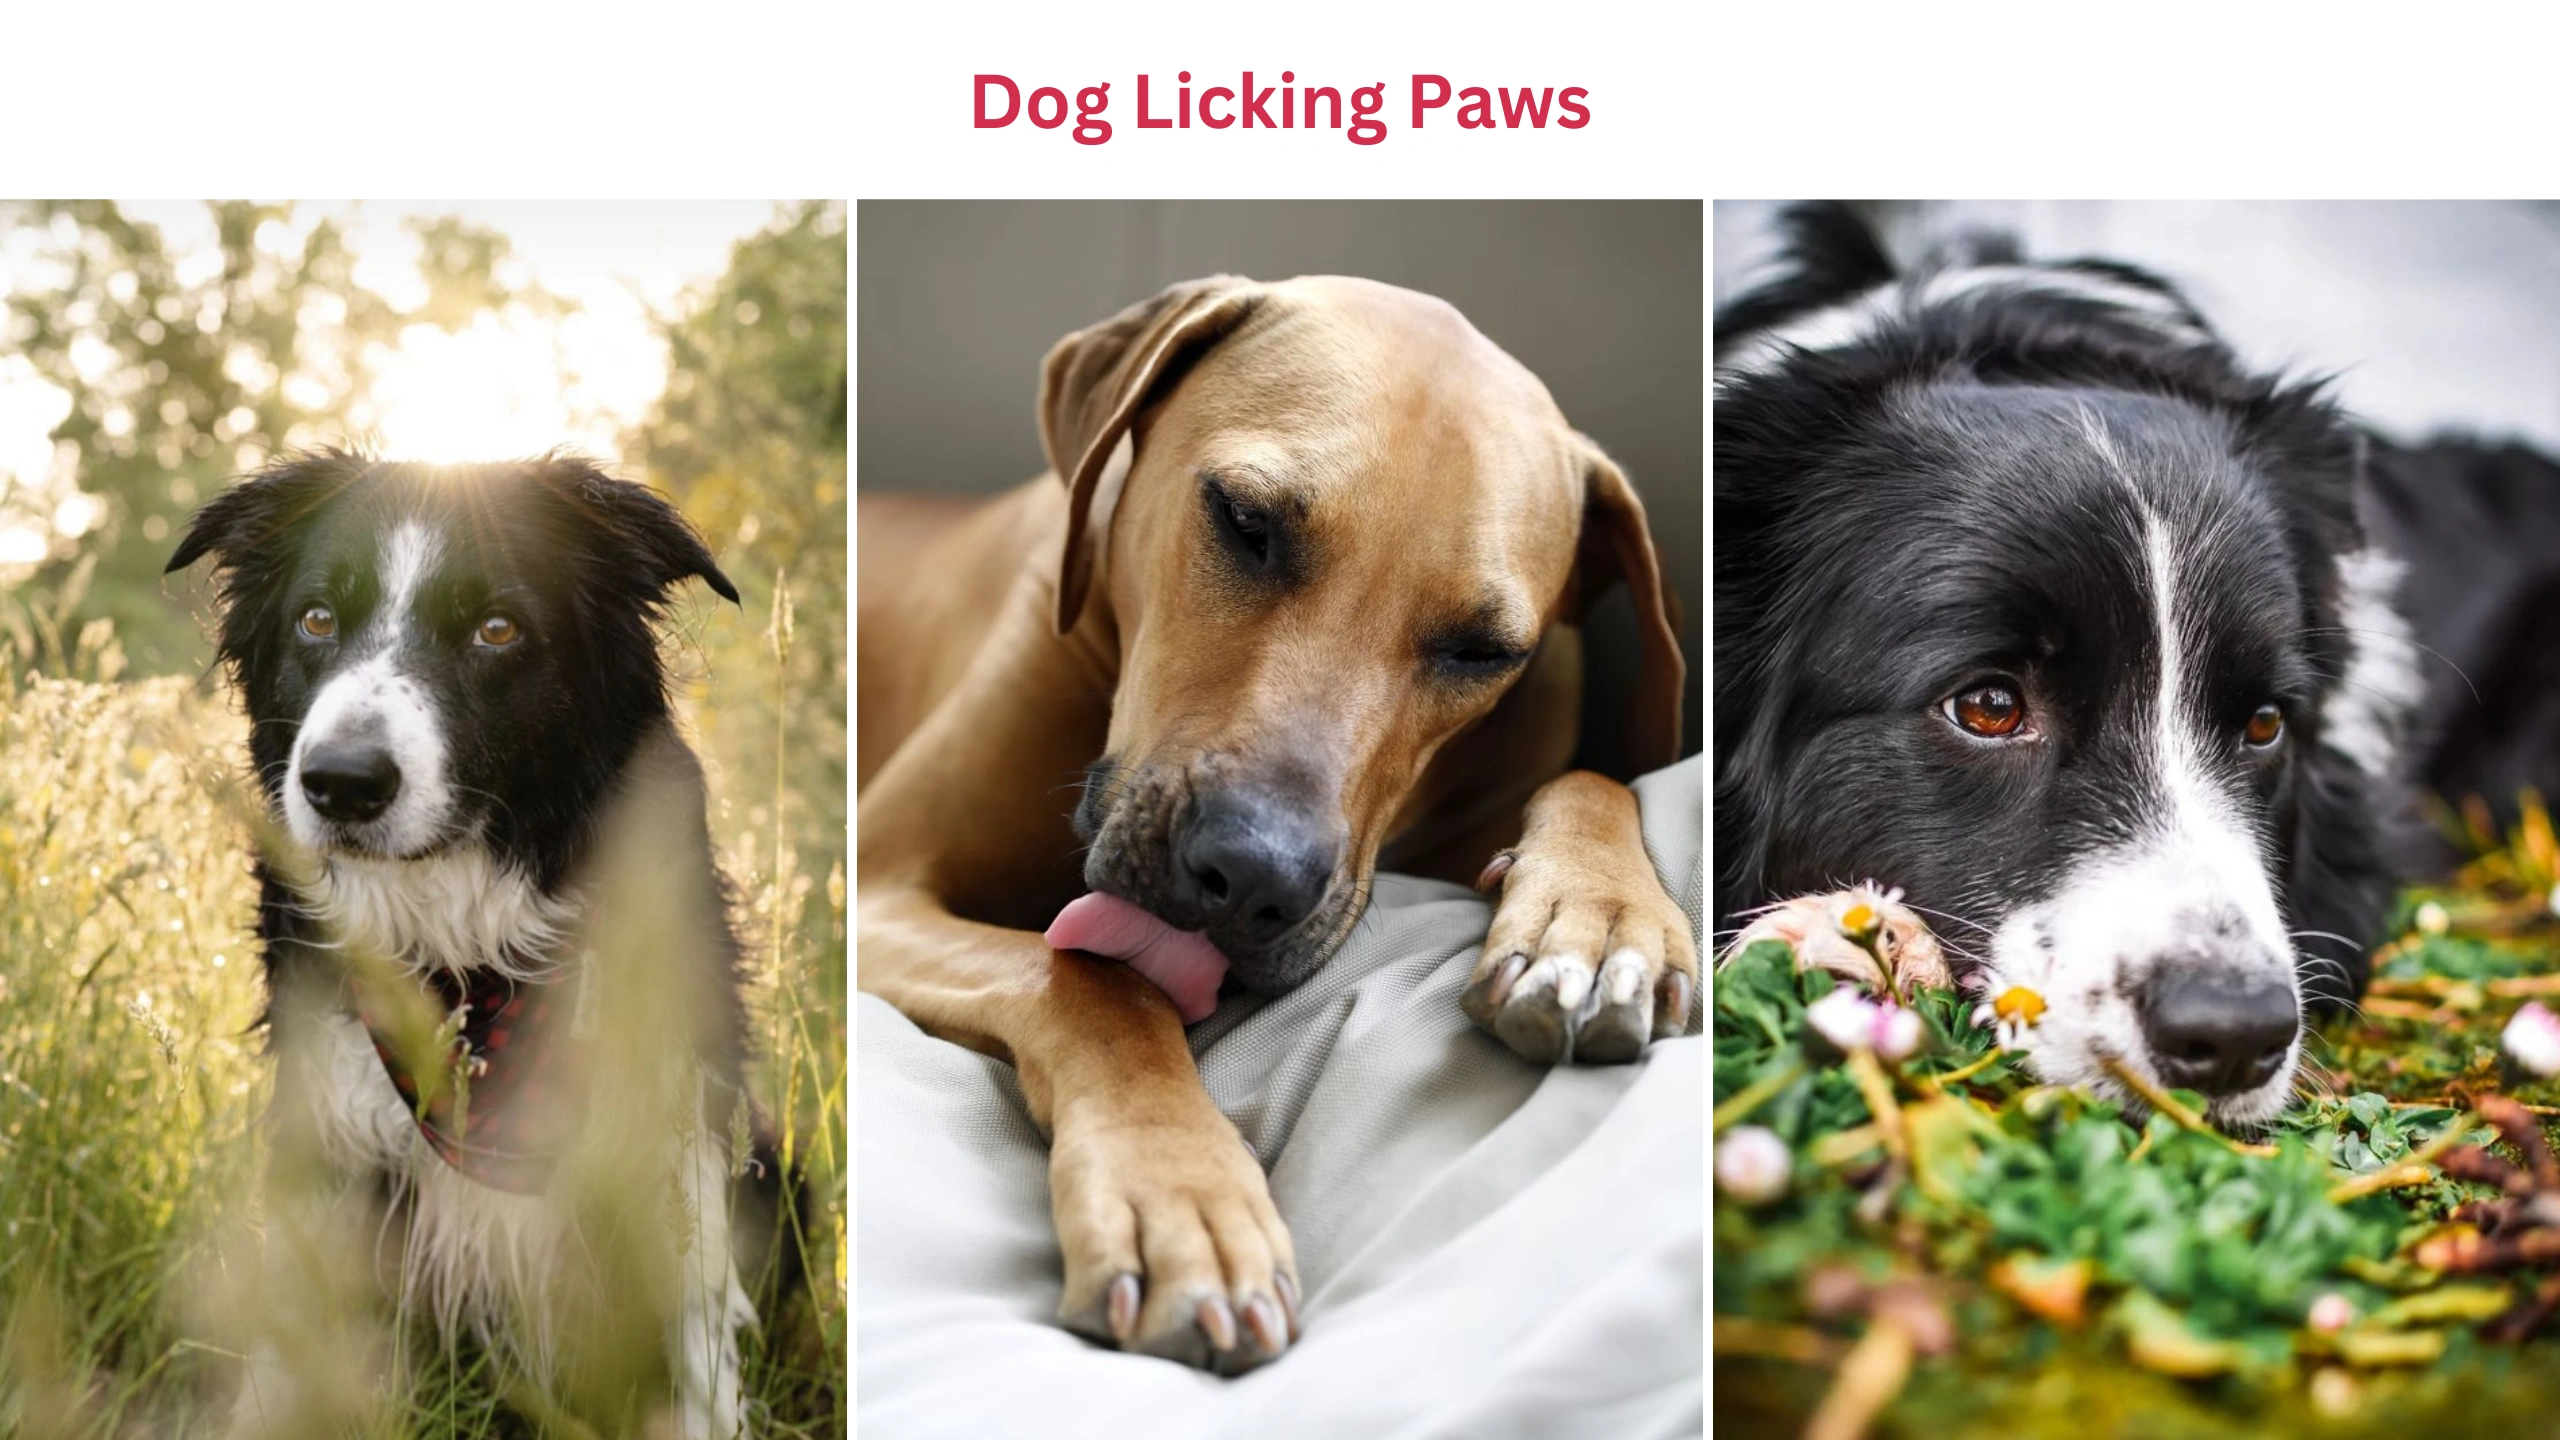 Dog licking paws